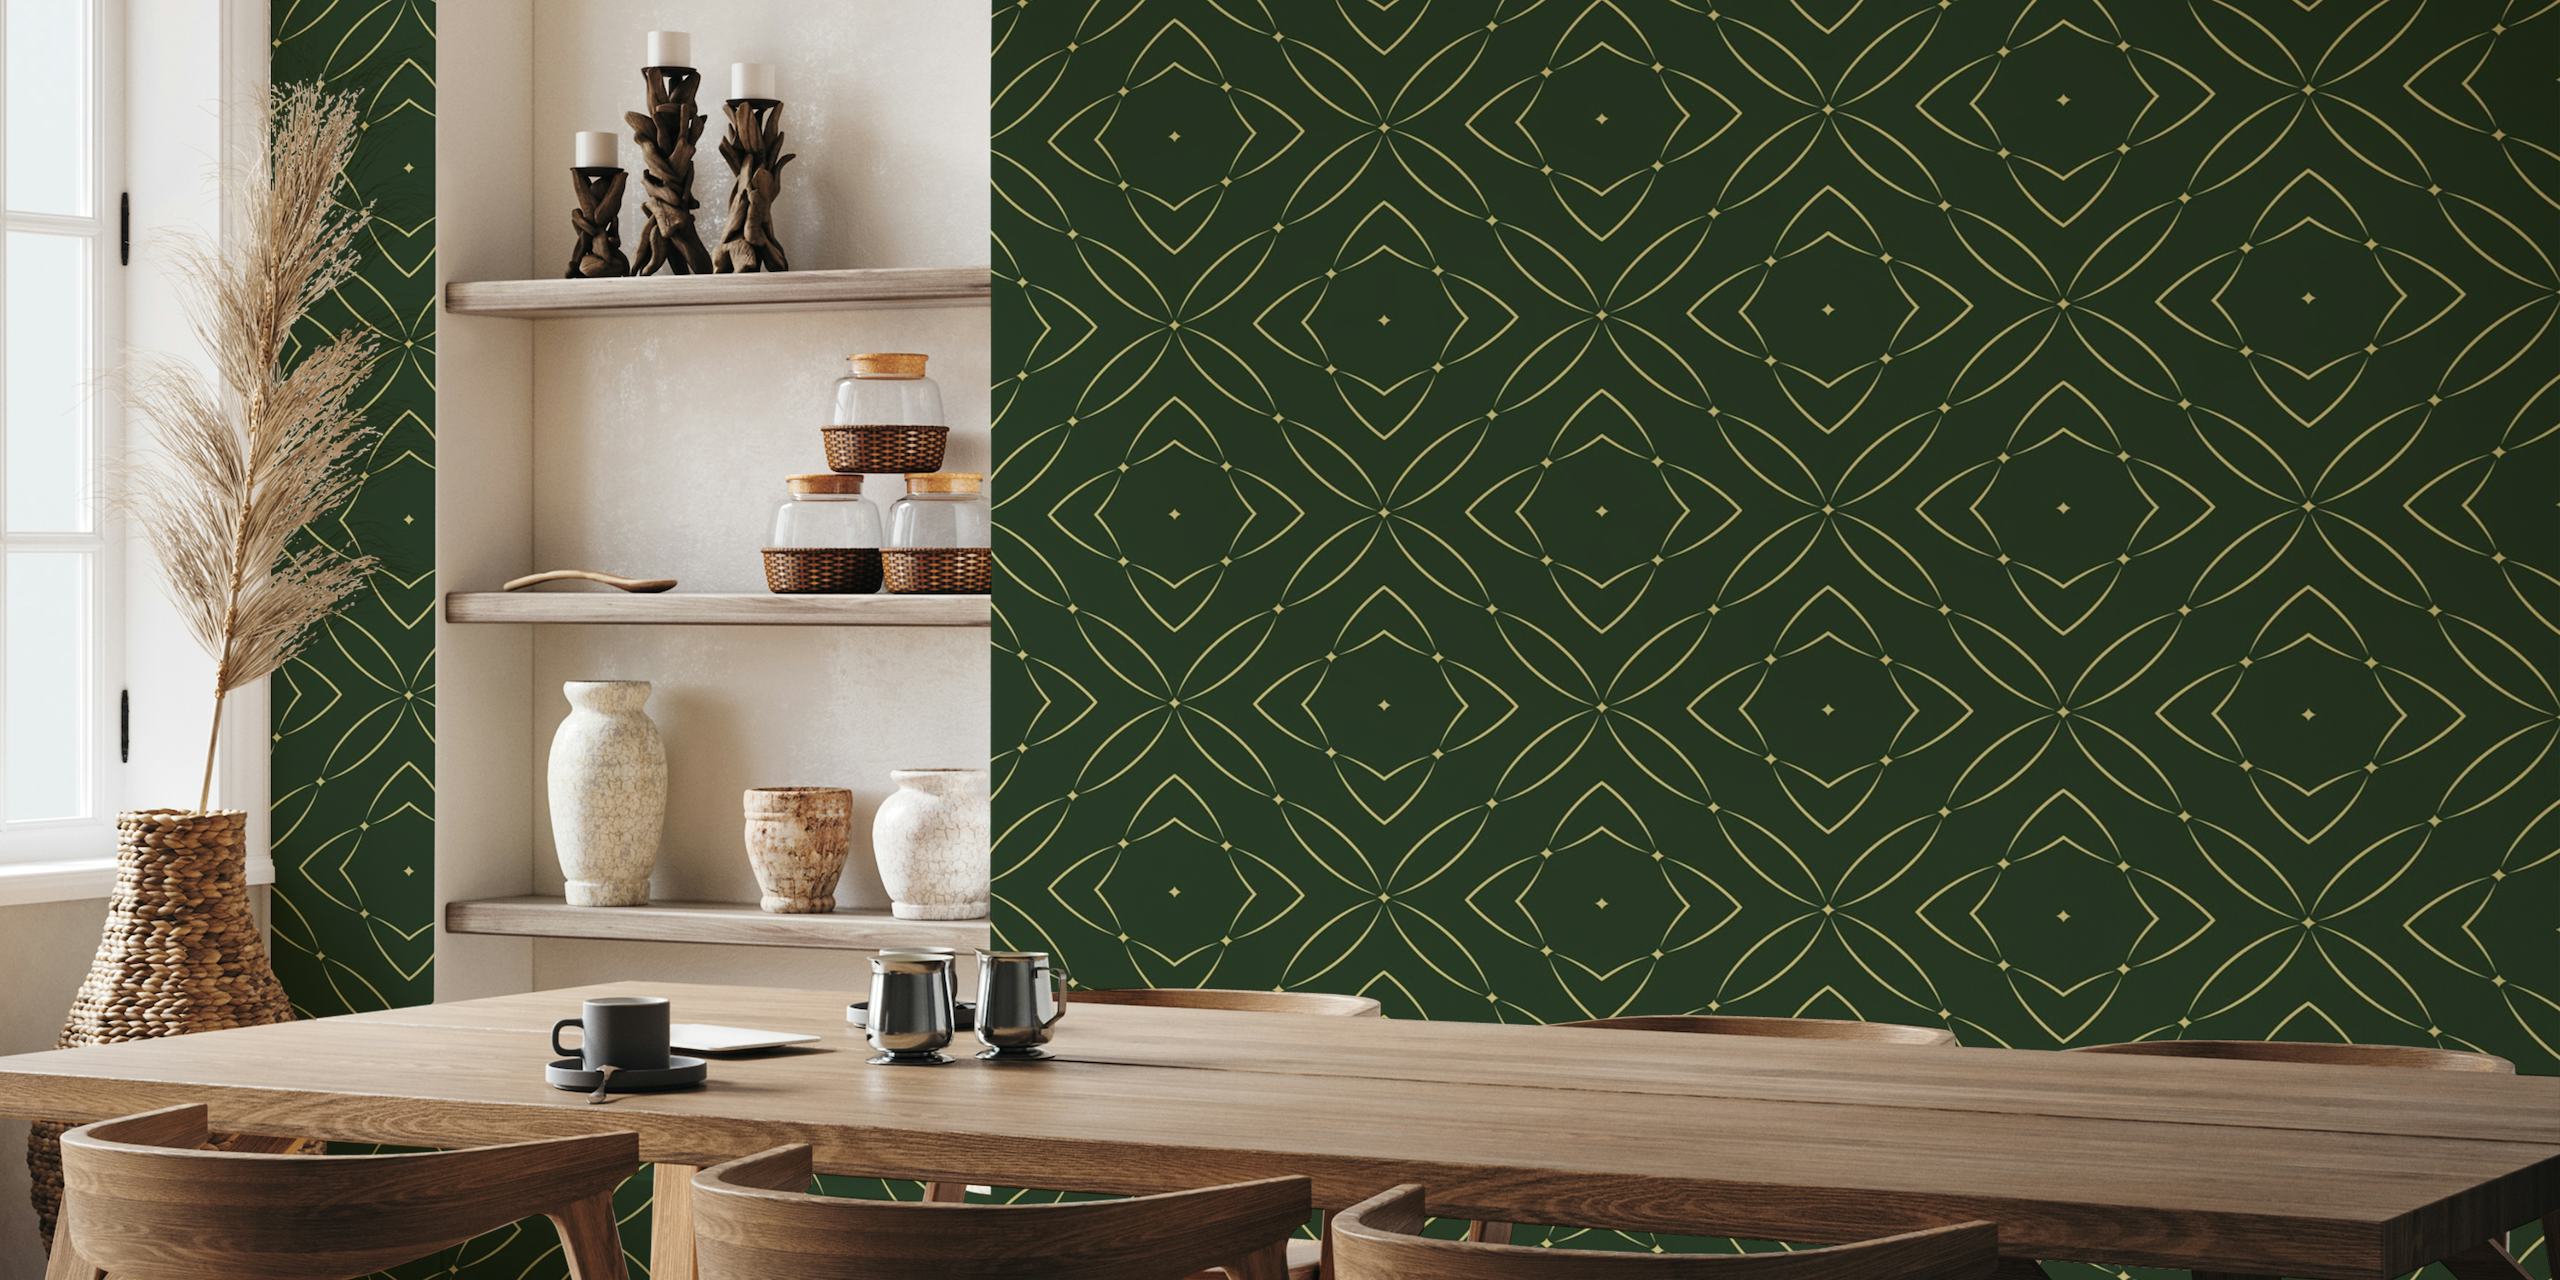 Elegant veggmaleri med geometrisk mønster i rike smaragdtoner